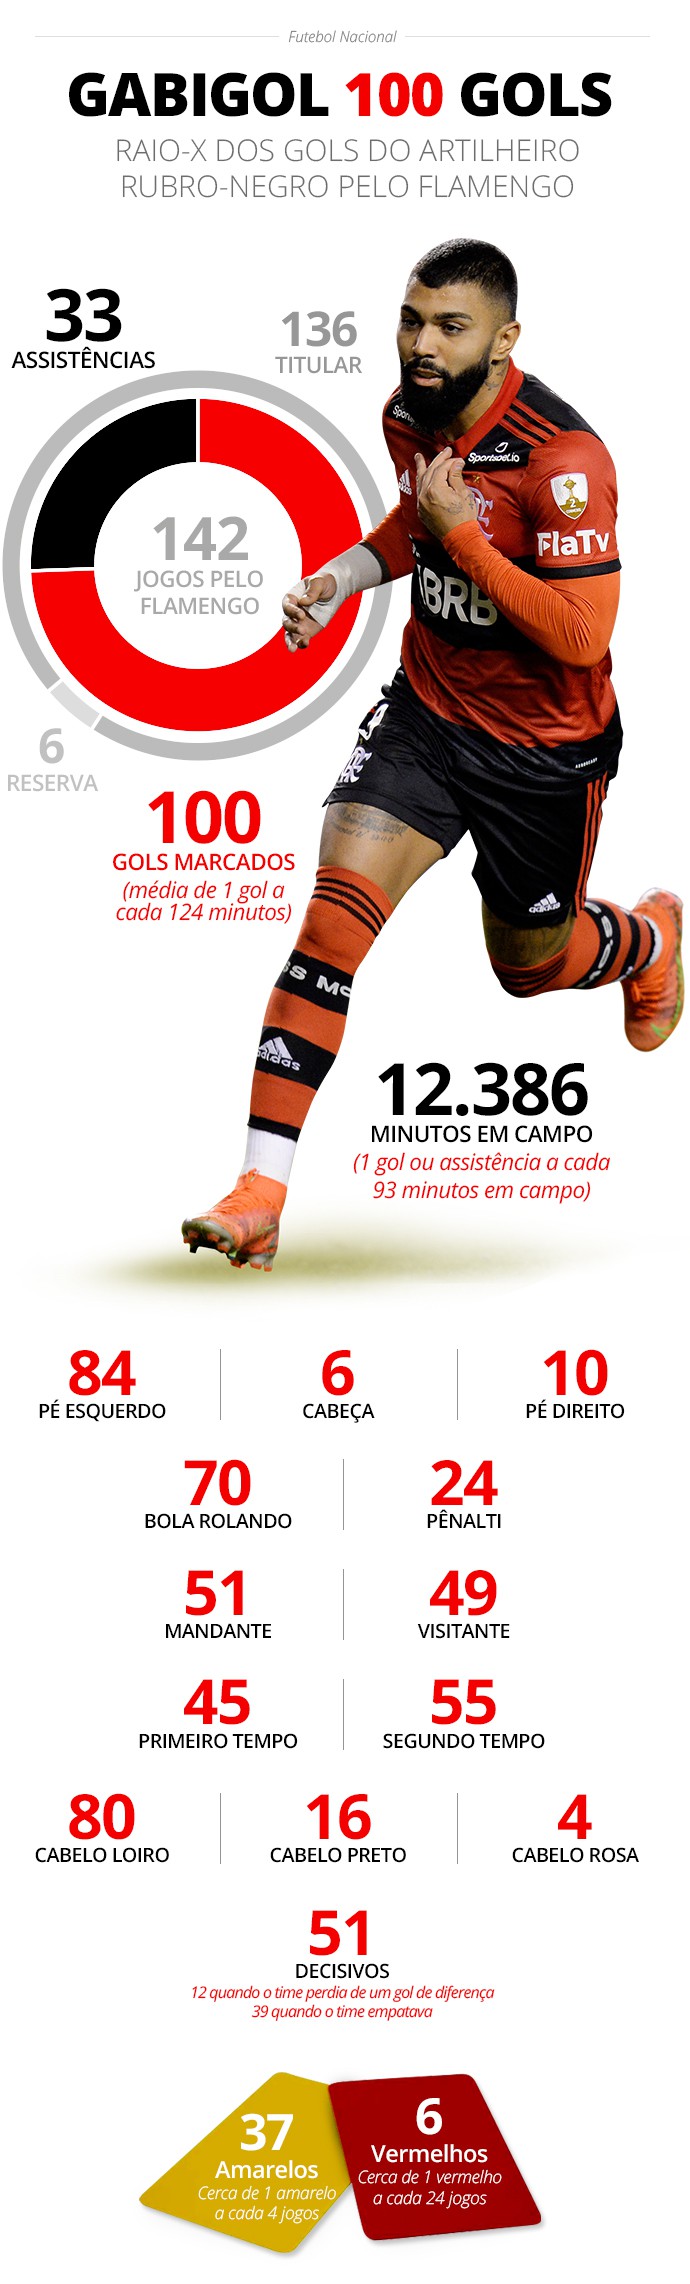 Gabigol completa 26 anos; veja alguns gols importantes do artilheiro